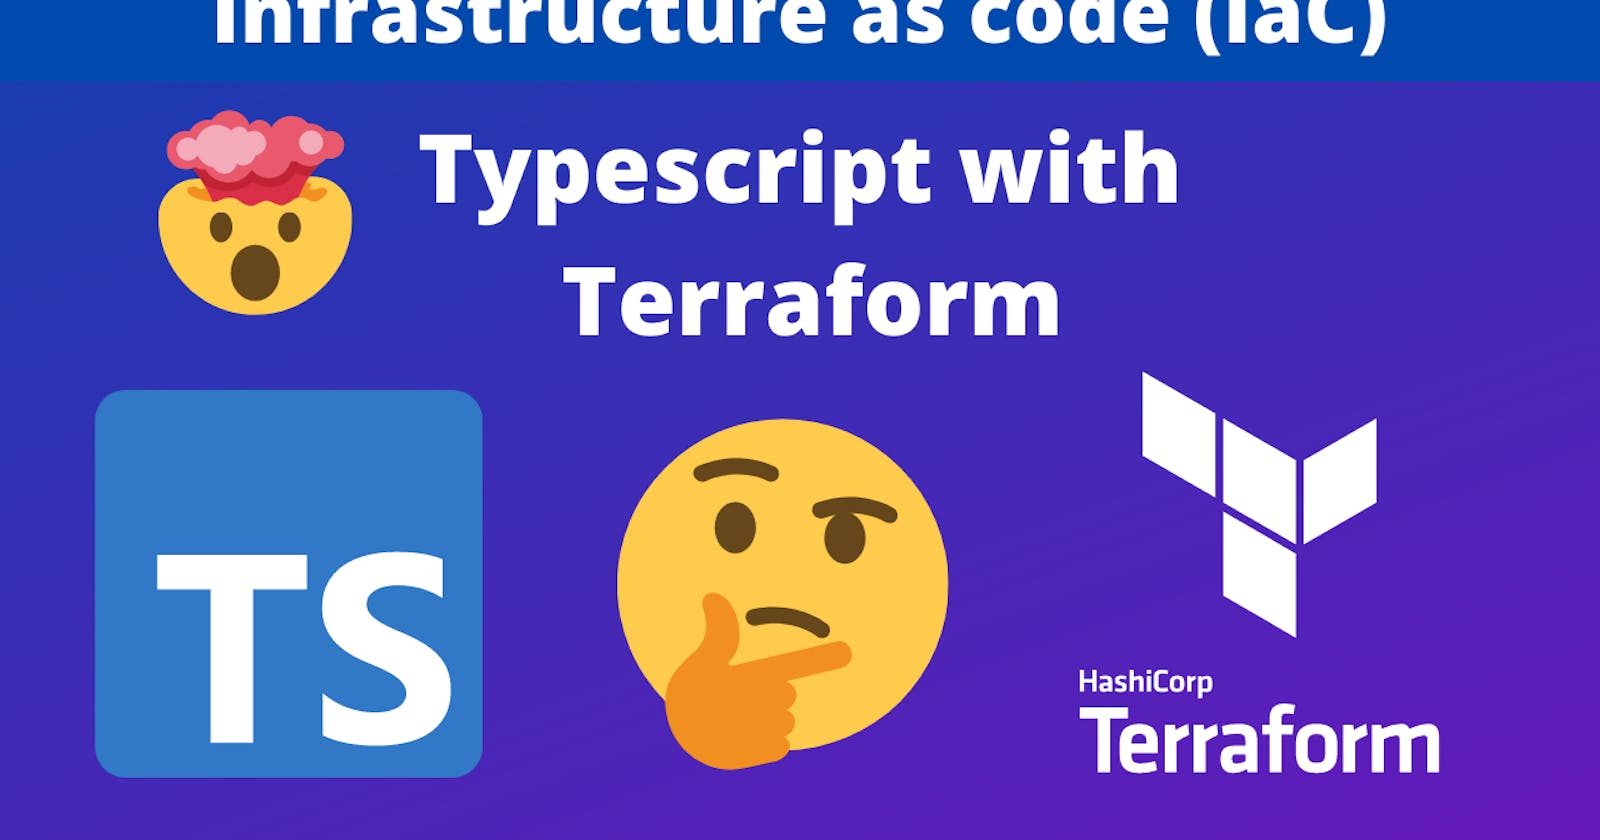 Typescript & Terraform for beginners - Infrastructure as code (IaC)